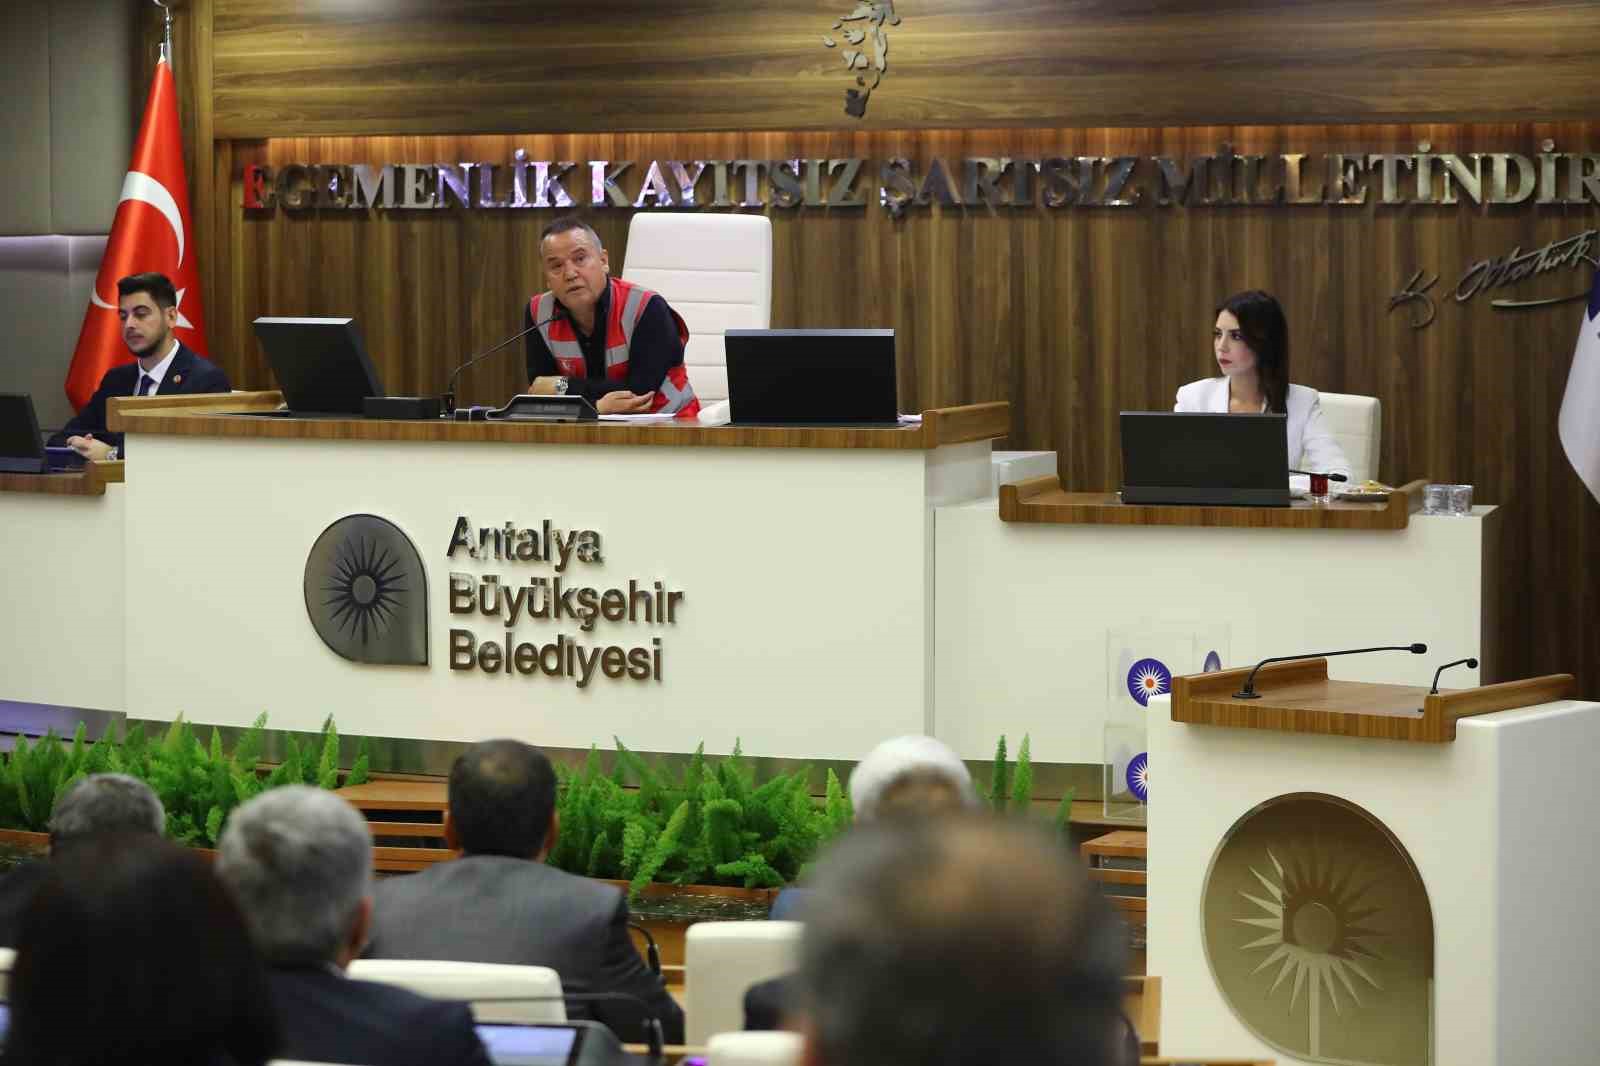 Antalya Büyükşehir Belediye Meclisi yeni dönemin ilk toplantısını yaptı
